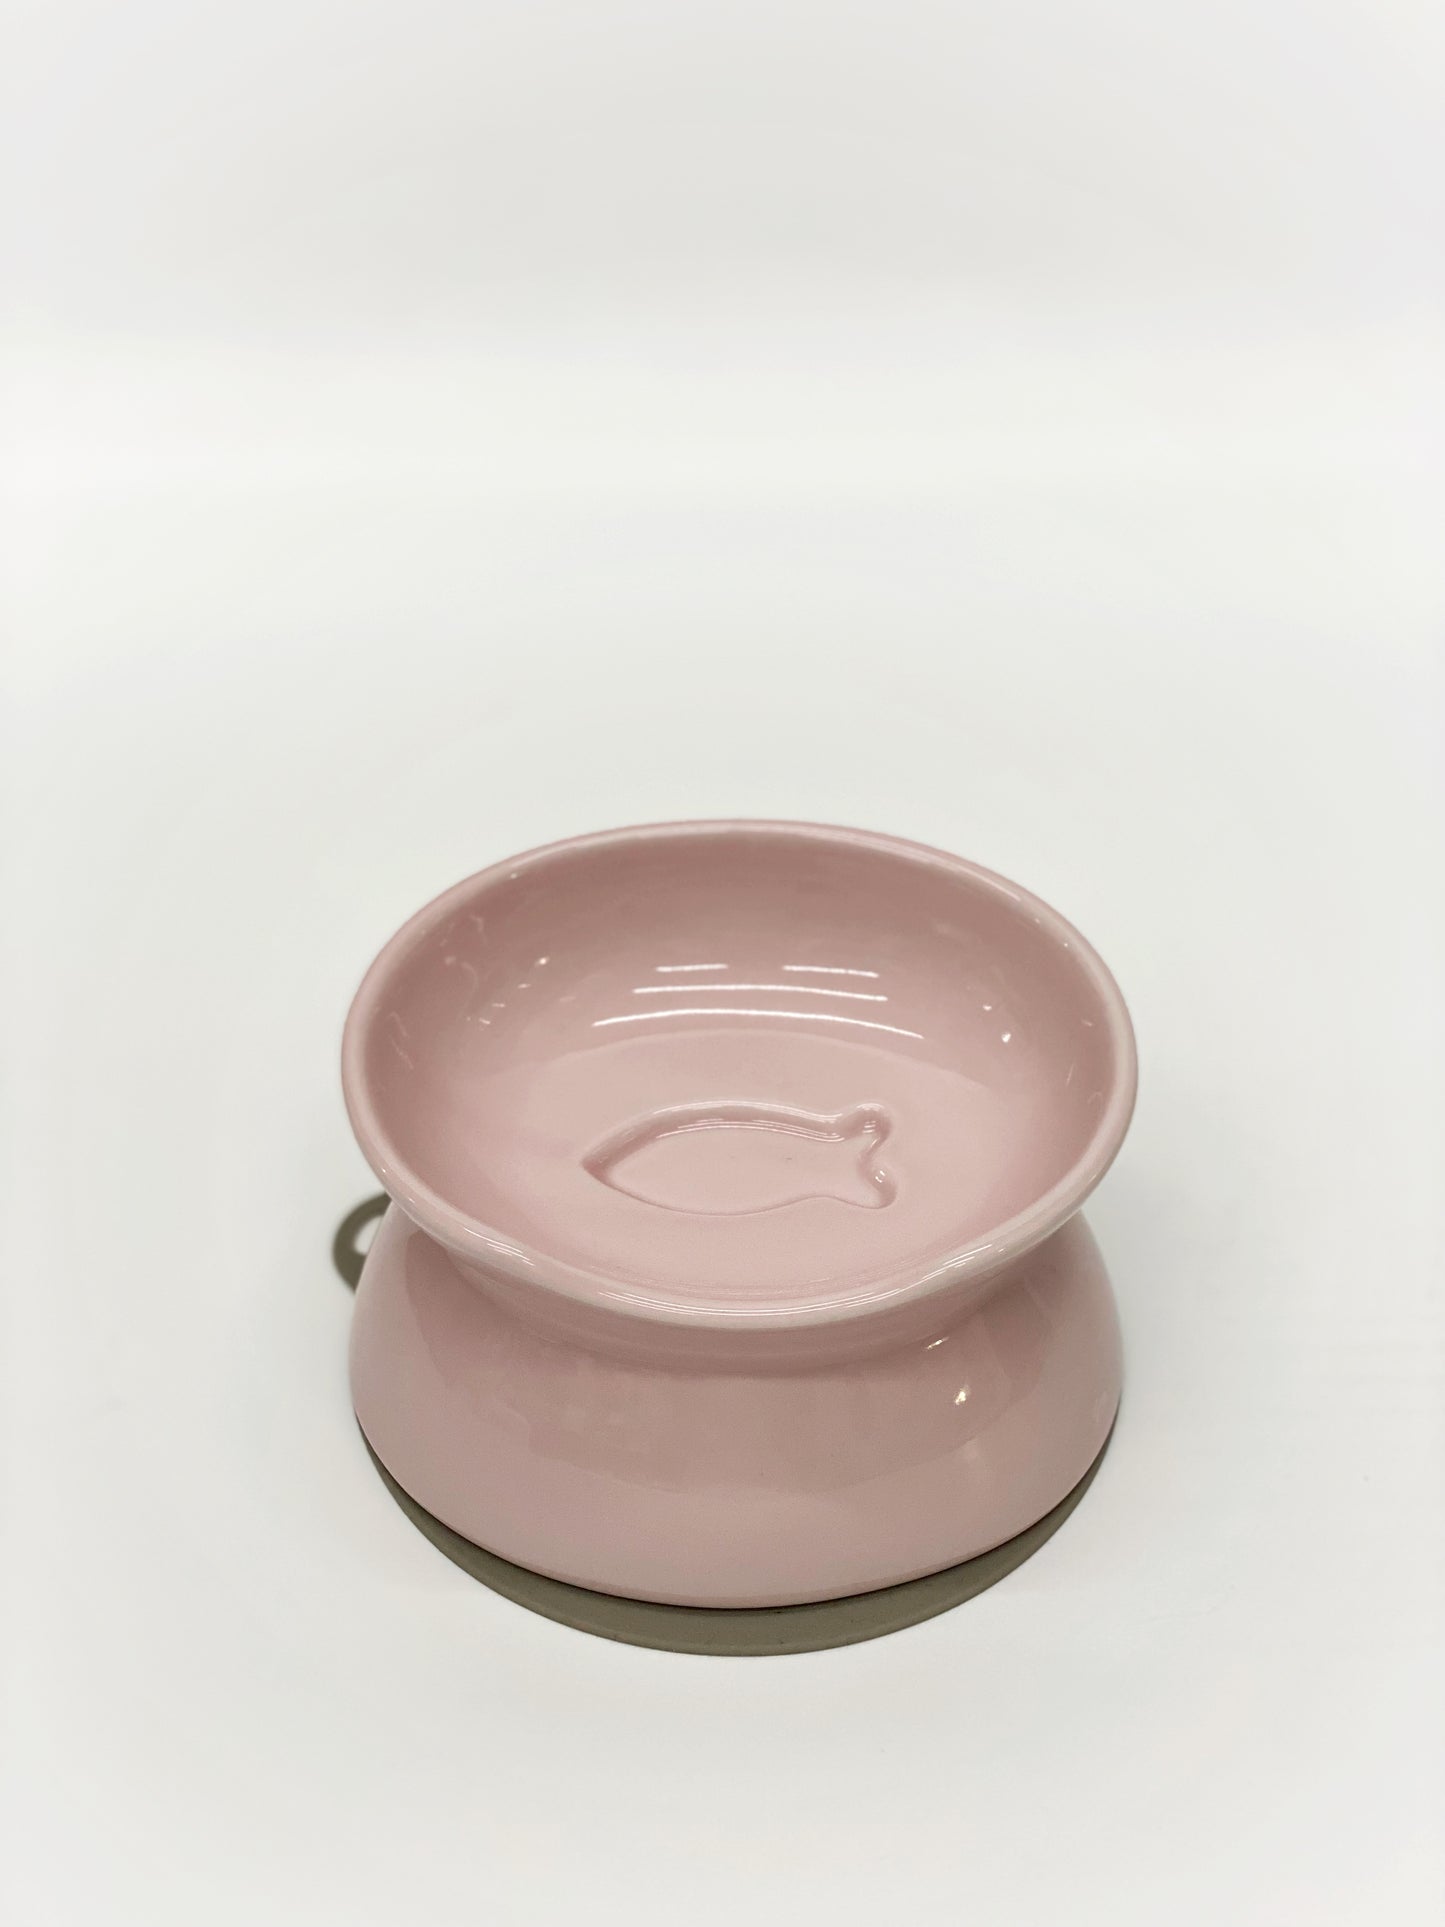 日本製 寵物食用碗 (粉紅色) | Made in Japan Pet Food Bowl (Pink)